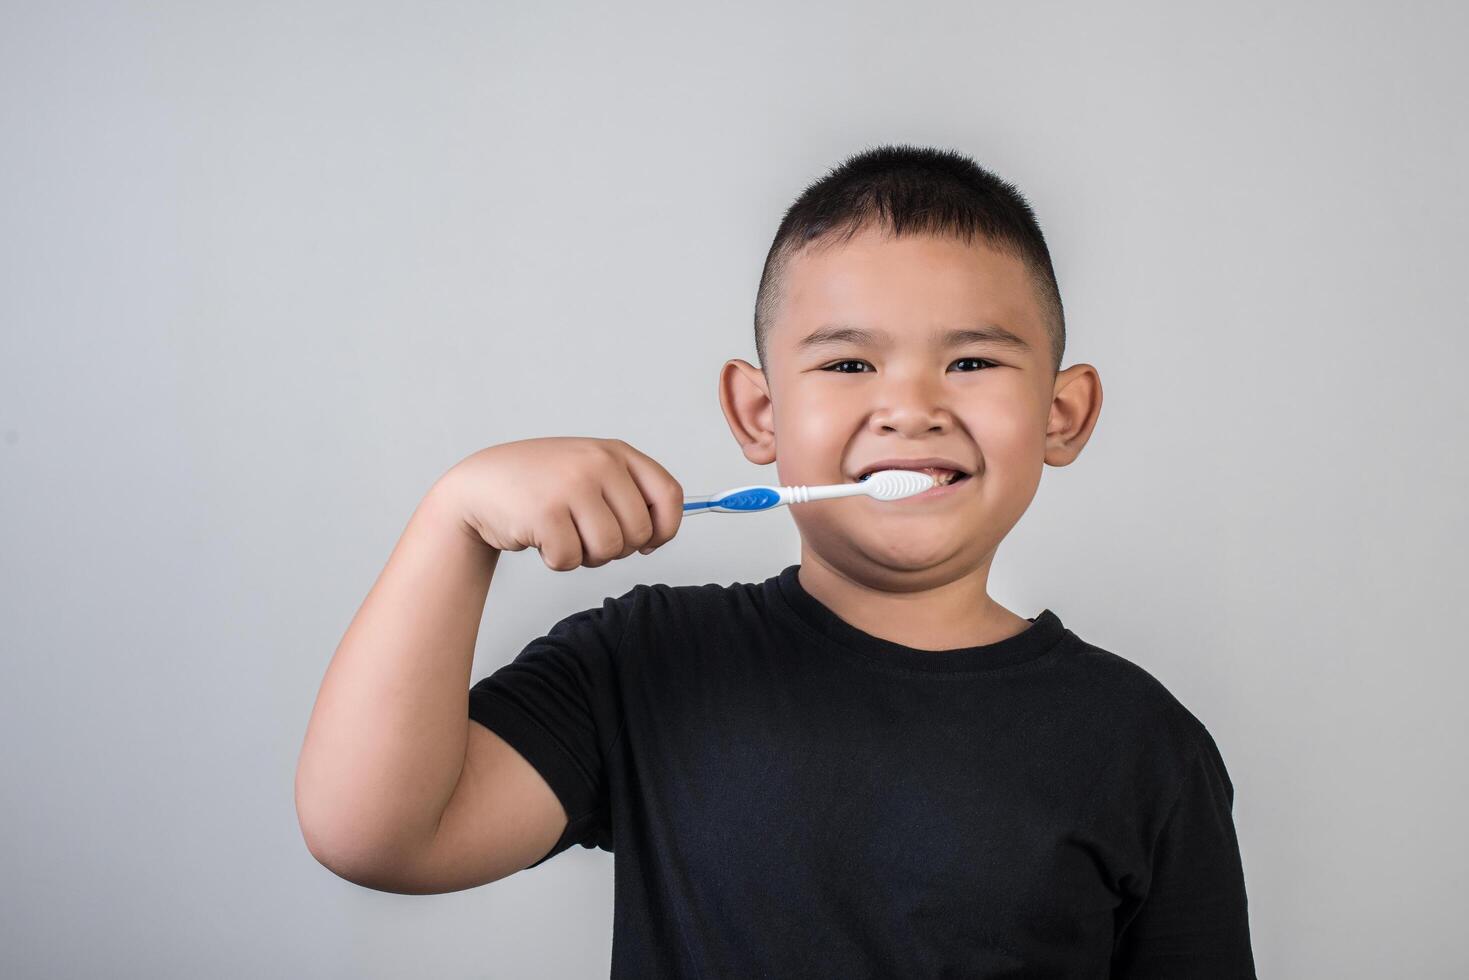 garotinho escovando os dentes em foto de estúdio